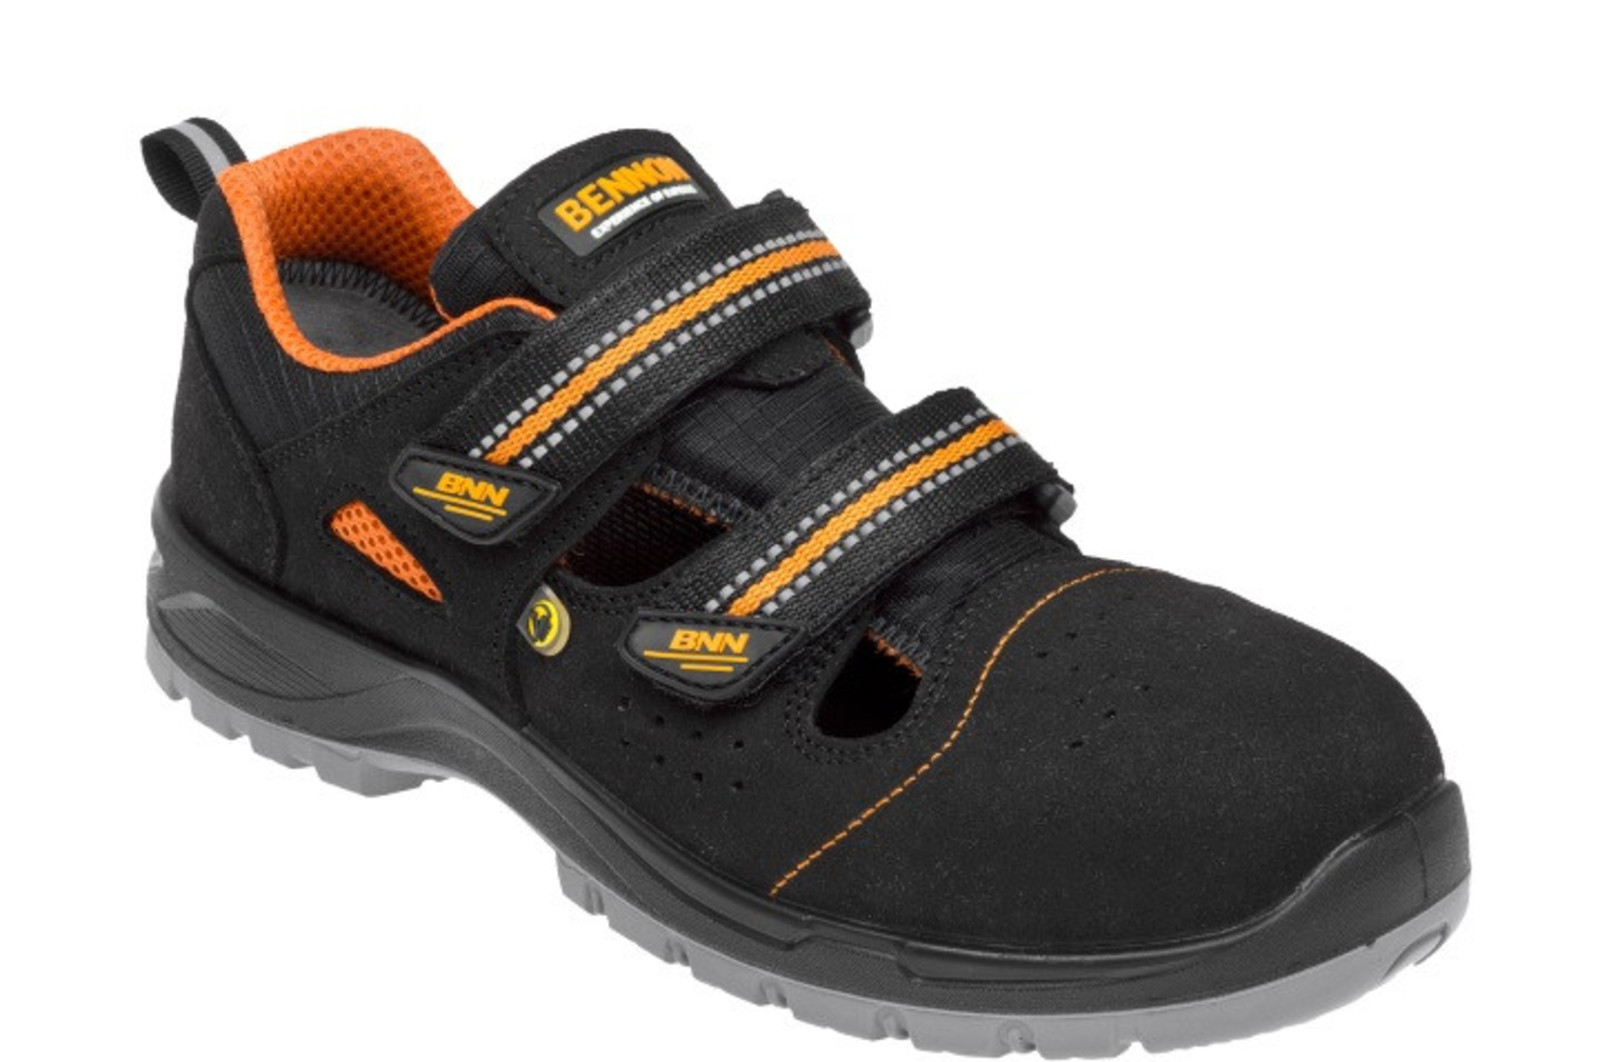 Bezpečnostné sandále Bennon Nux S1P ESD metal free - veľkosť: 37, farba: čierna